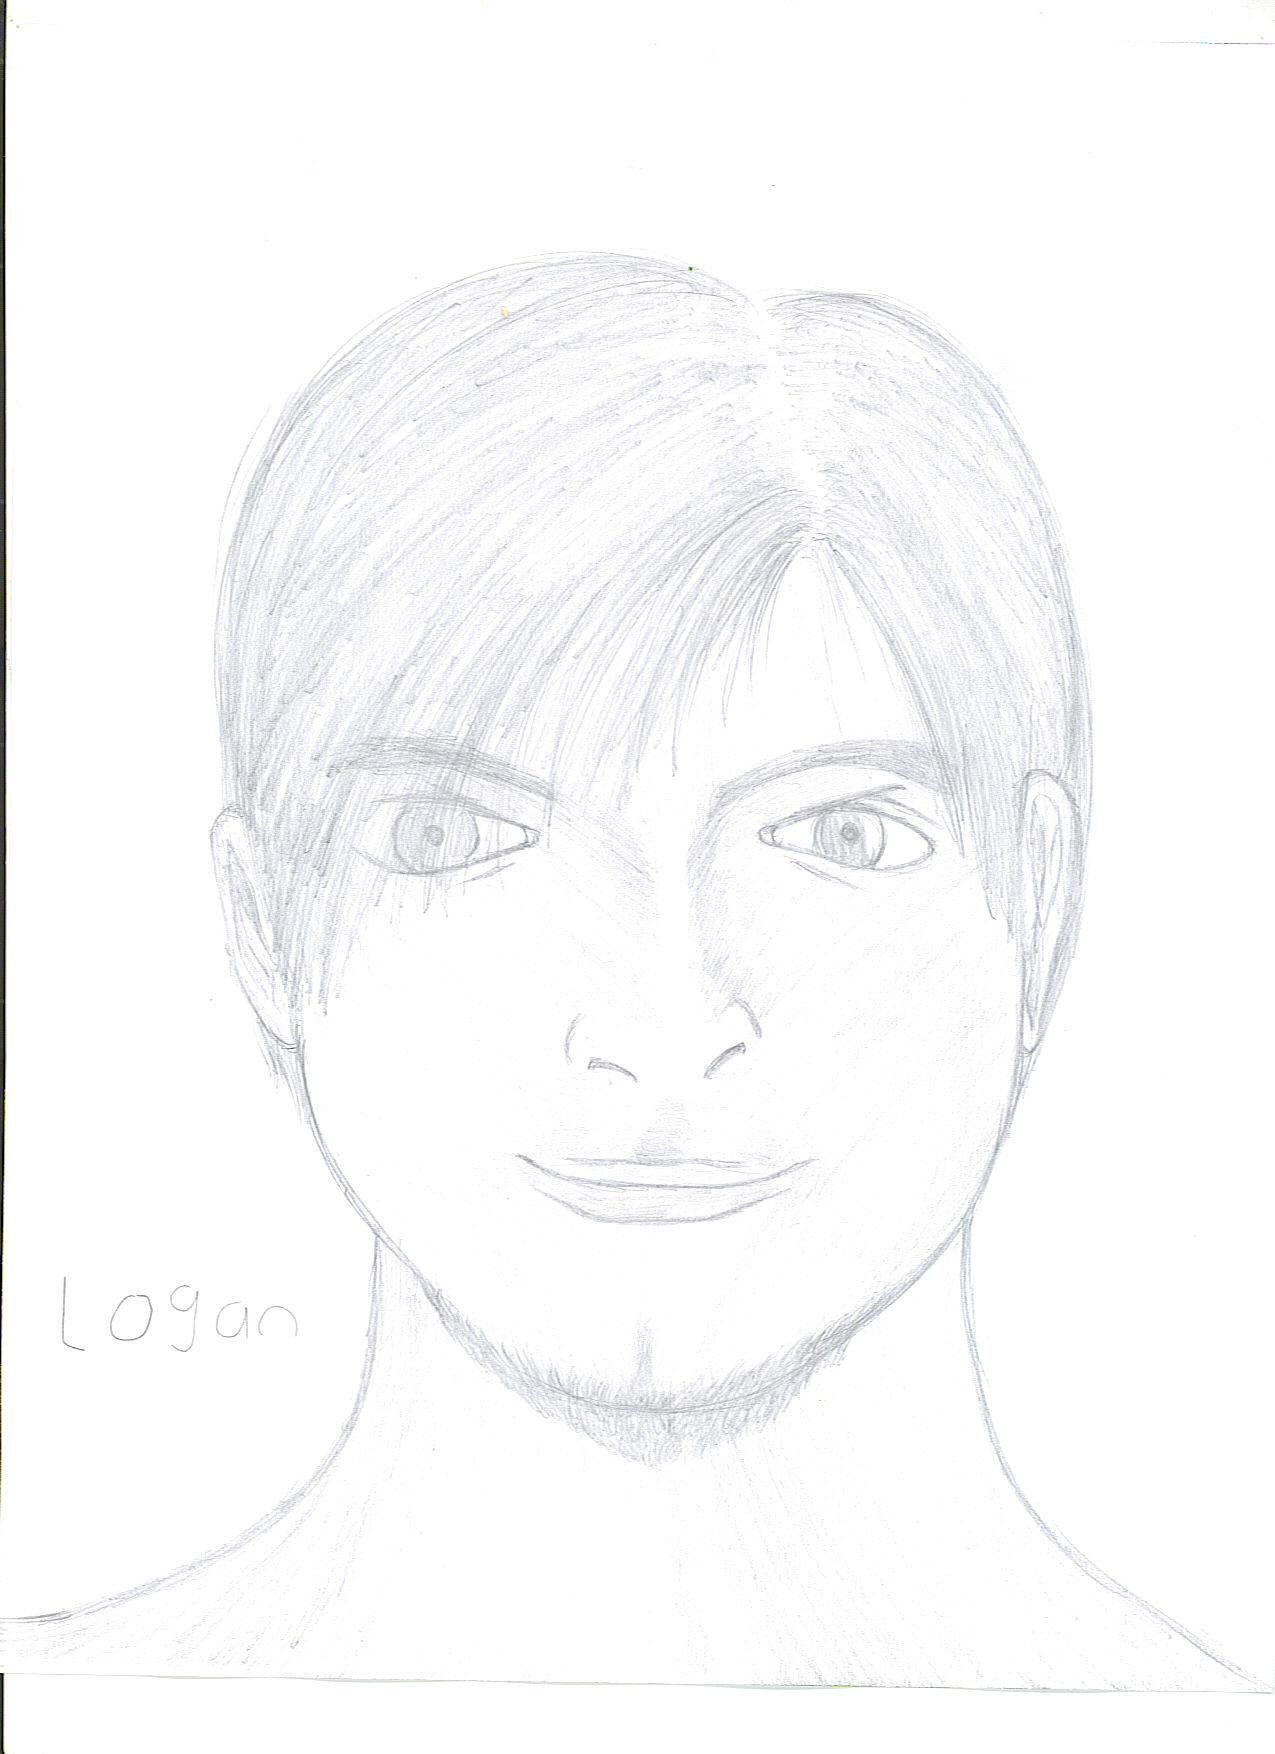 Logan_Portrait by resident_evil_fan_